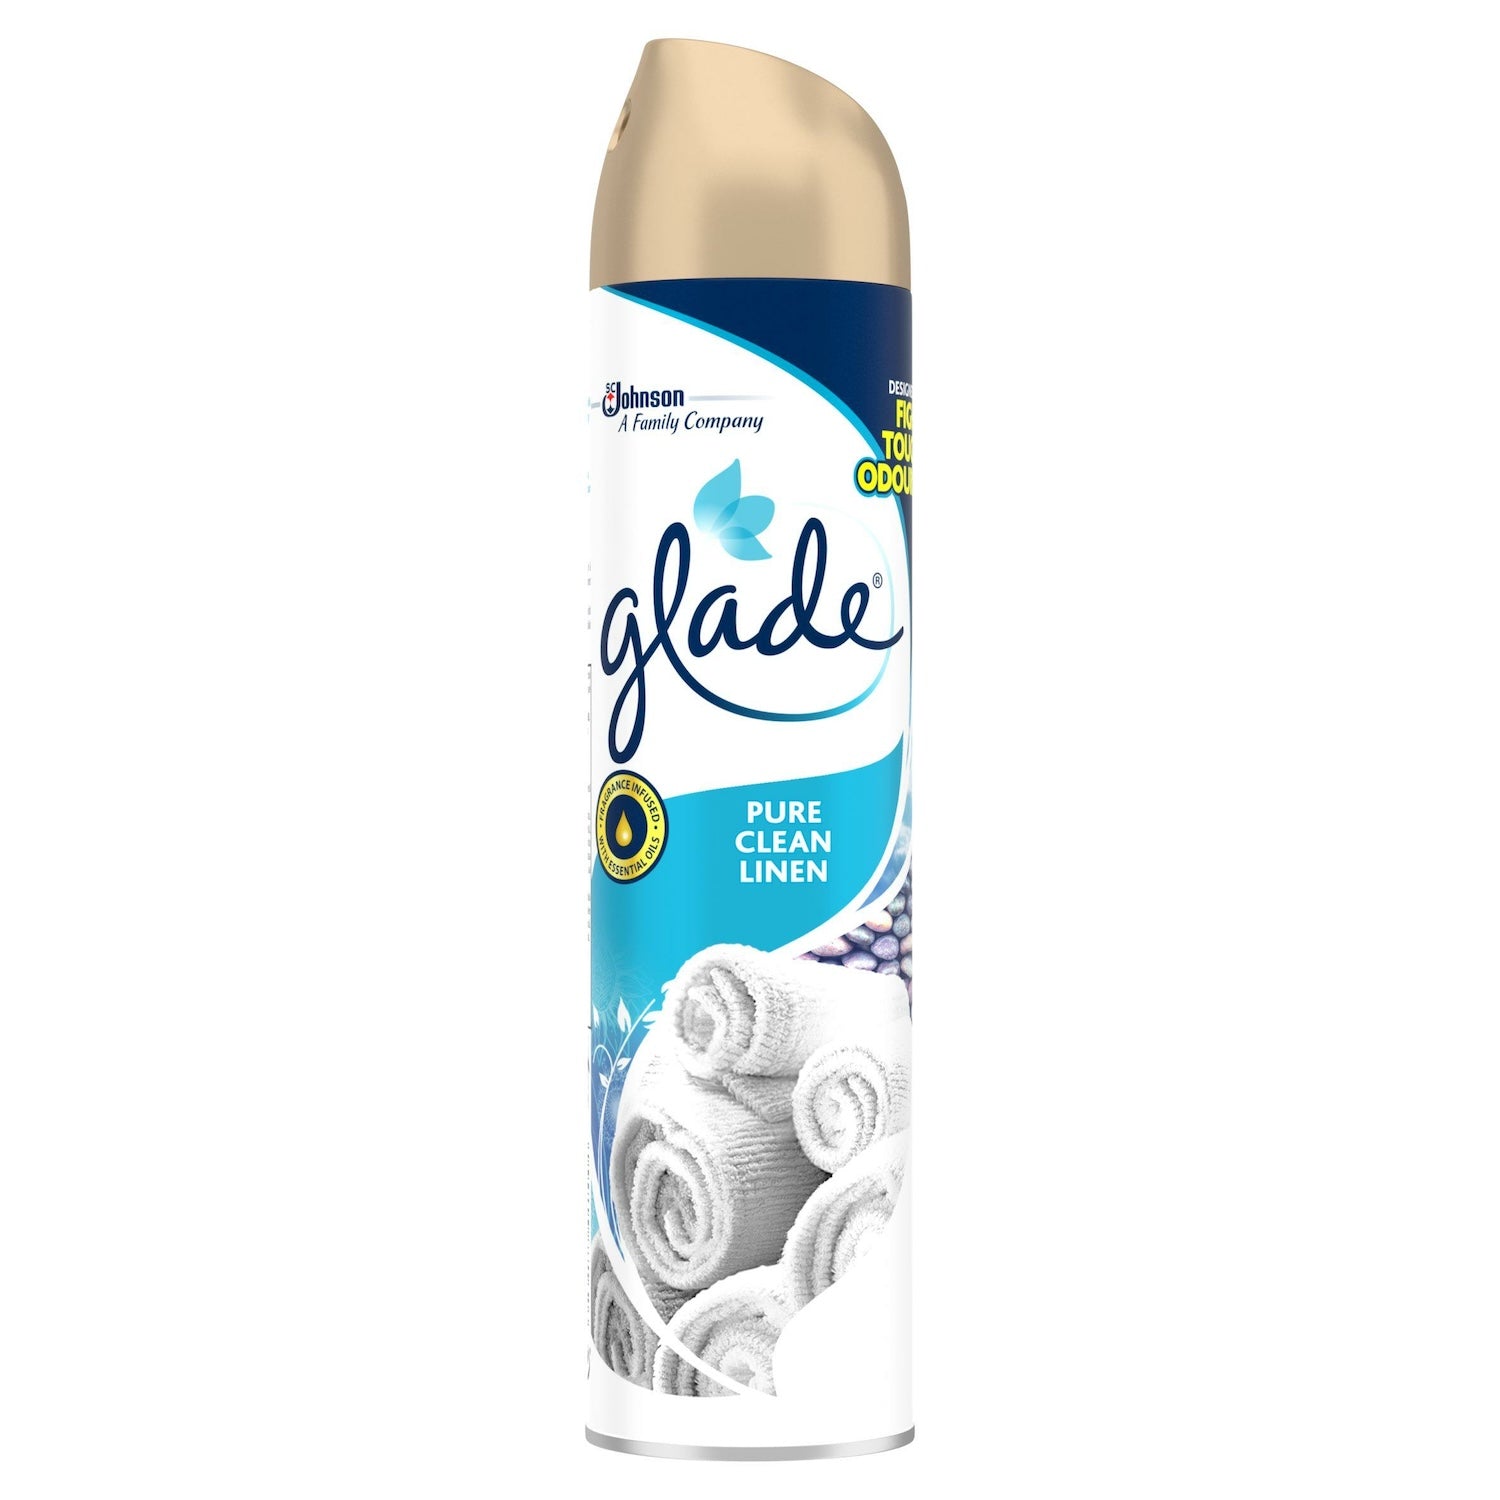 Glade Air Freshener | Clean Linen